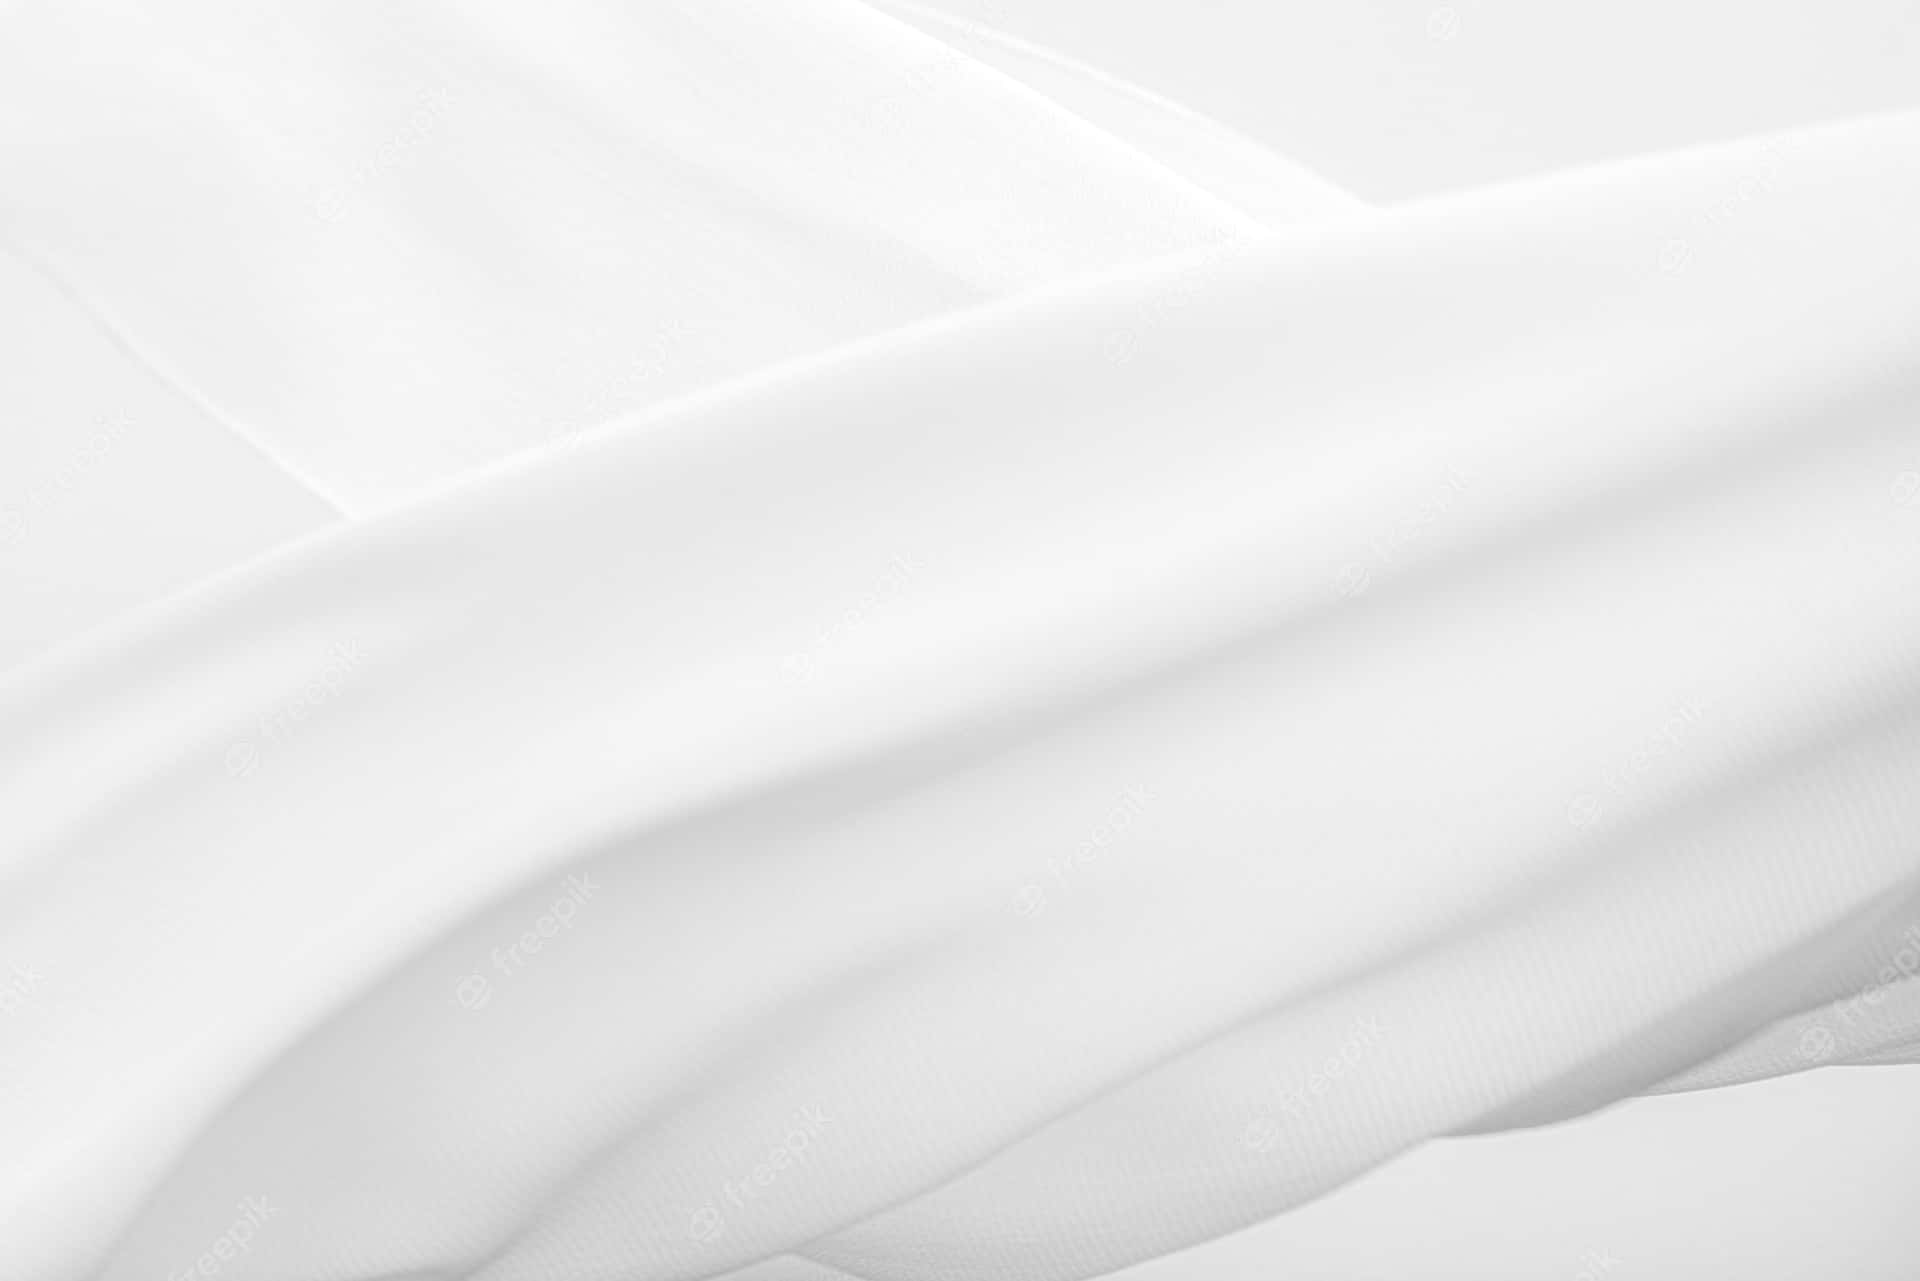 White Silk Background With White Swathes